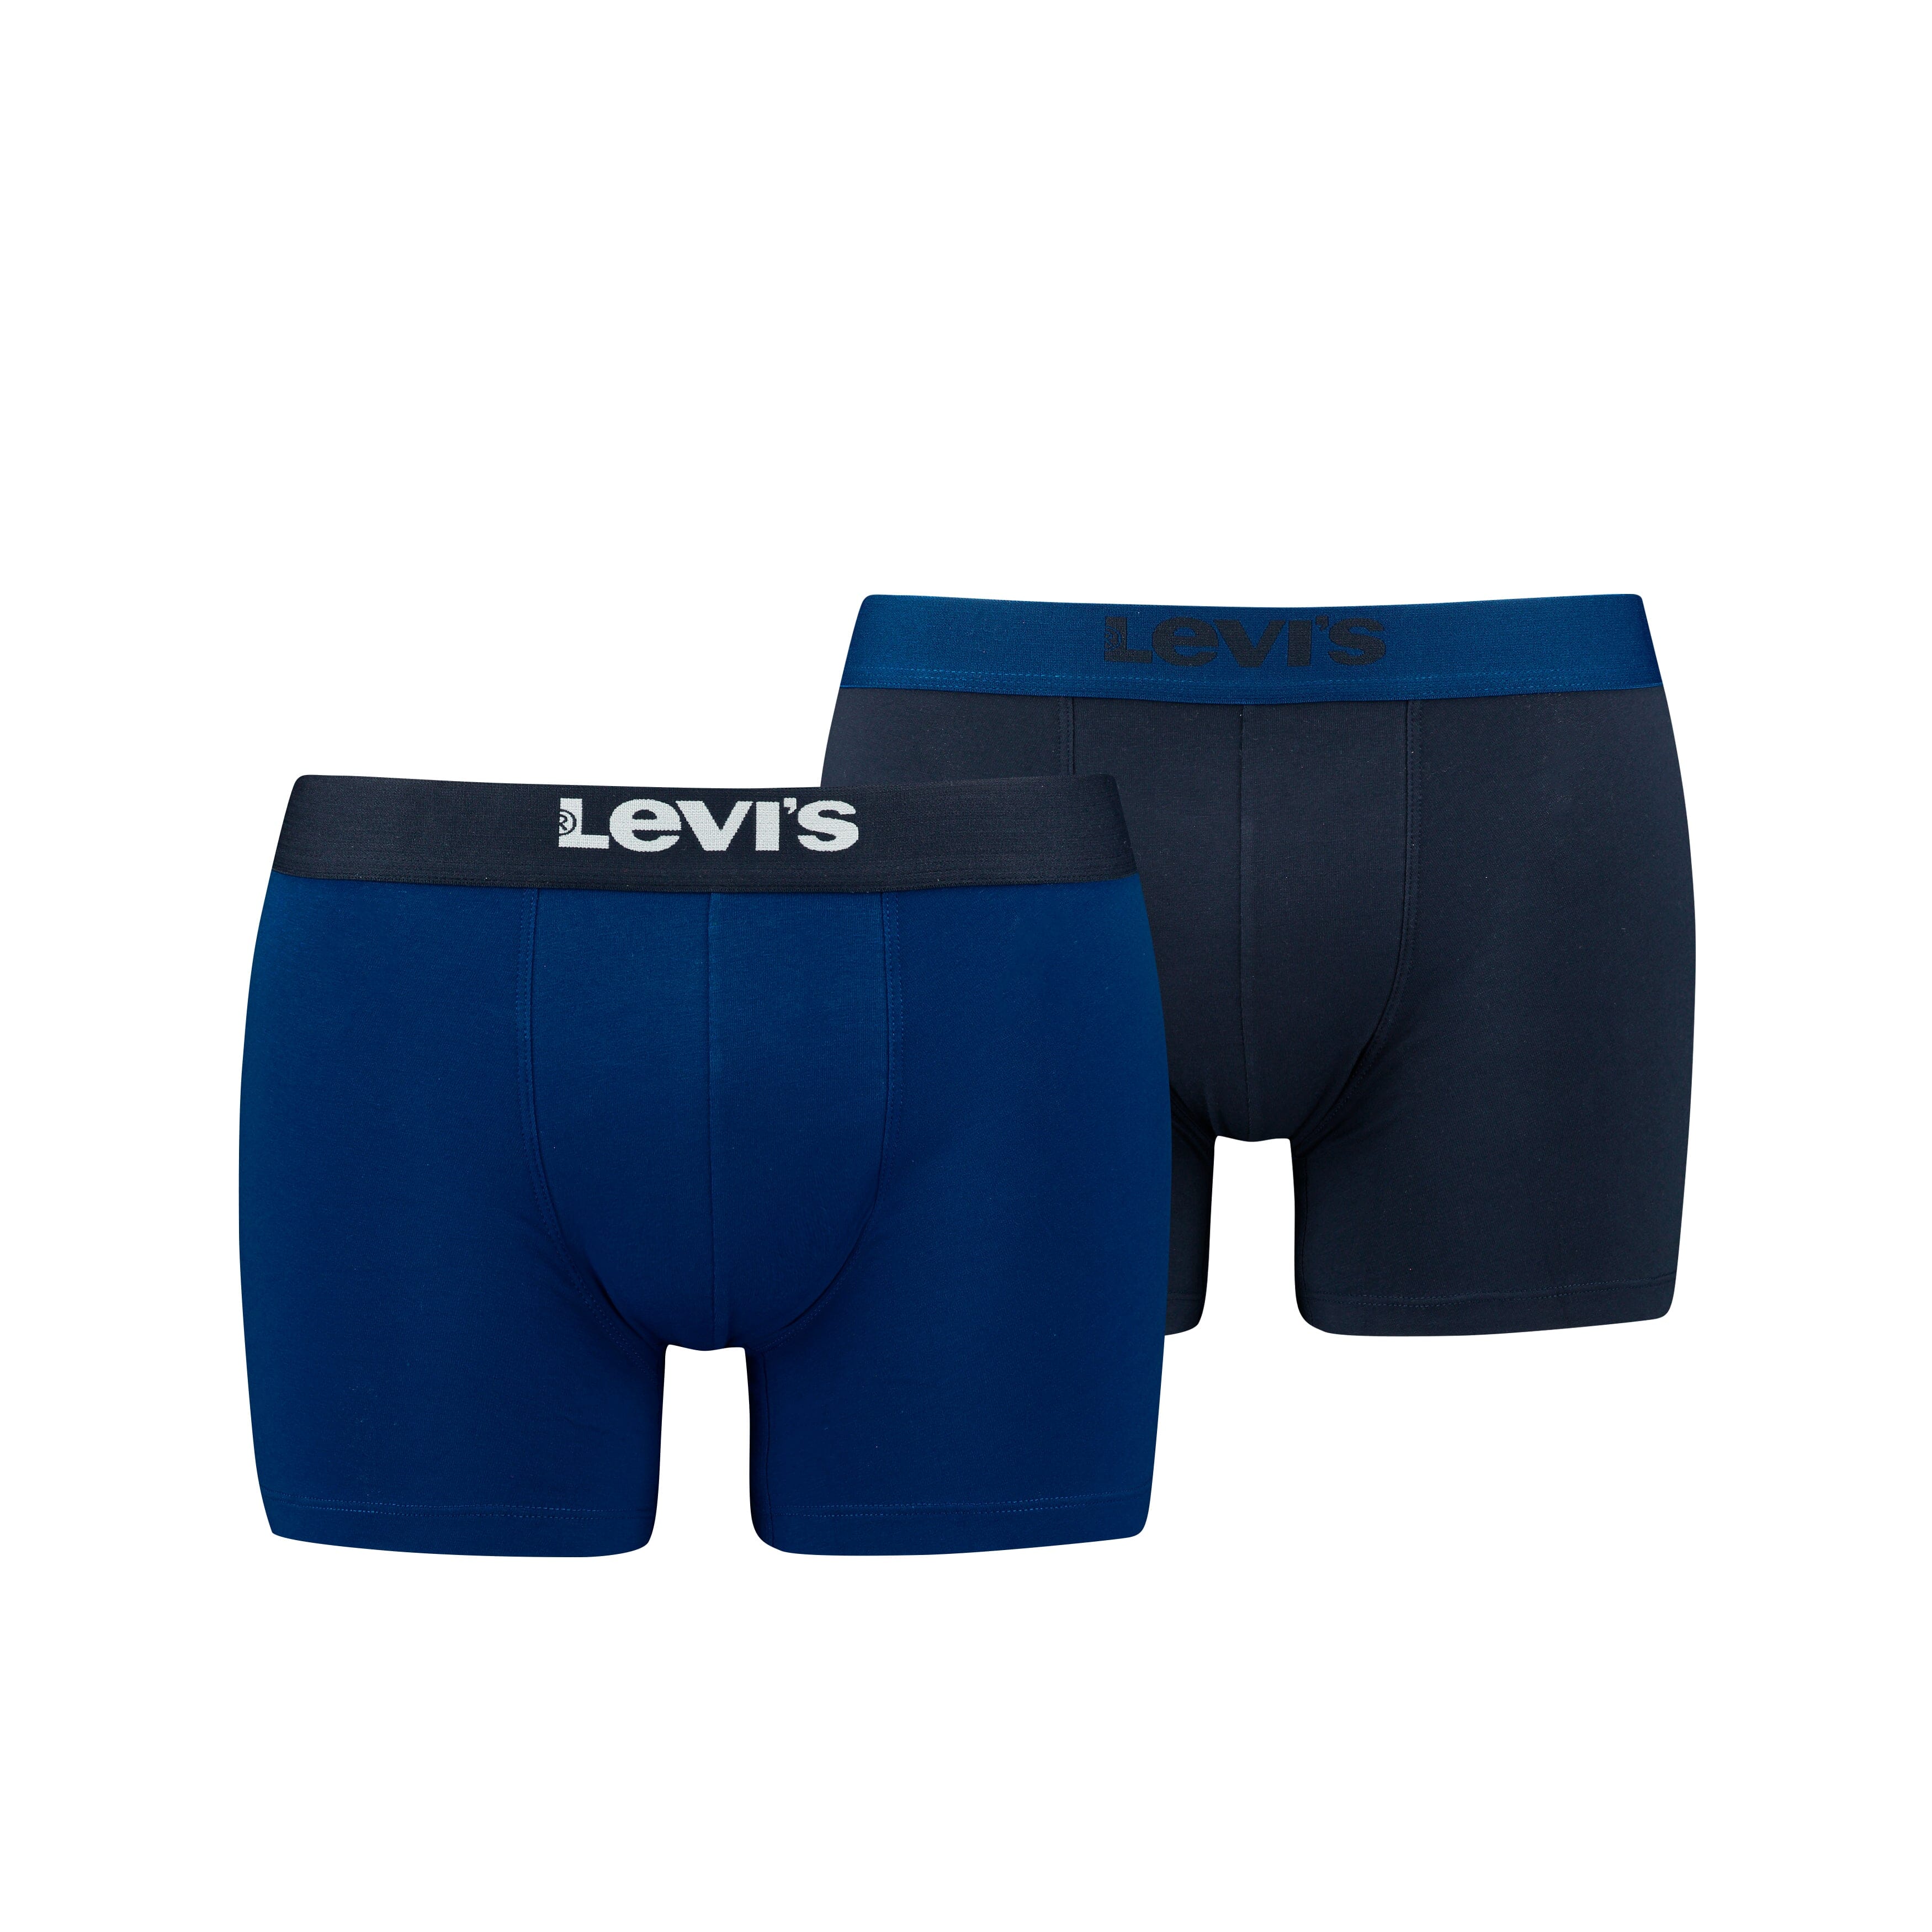 Levi's - Basic Boxer 2-pack - 701222842 - 013 Blue Combo Boxershort Levis 